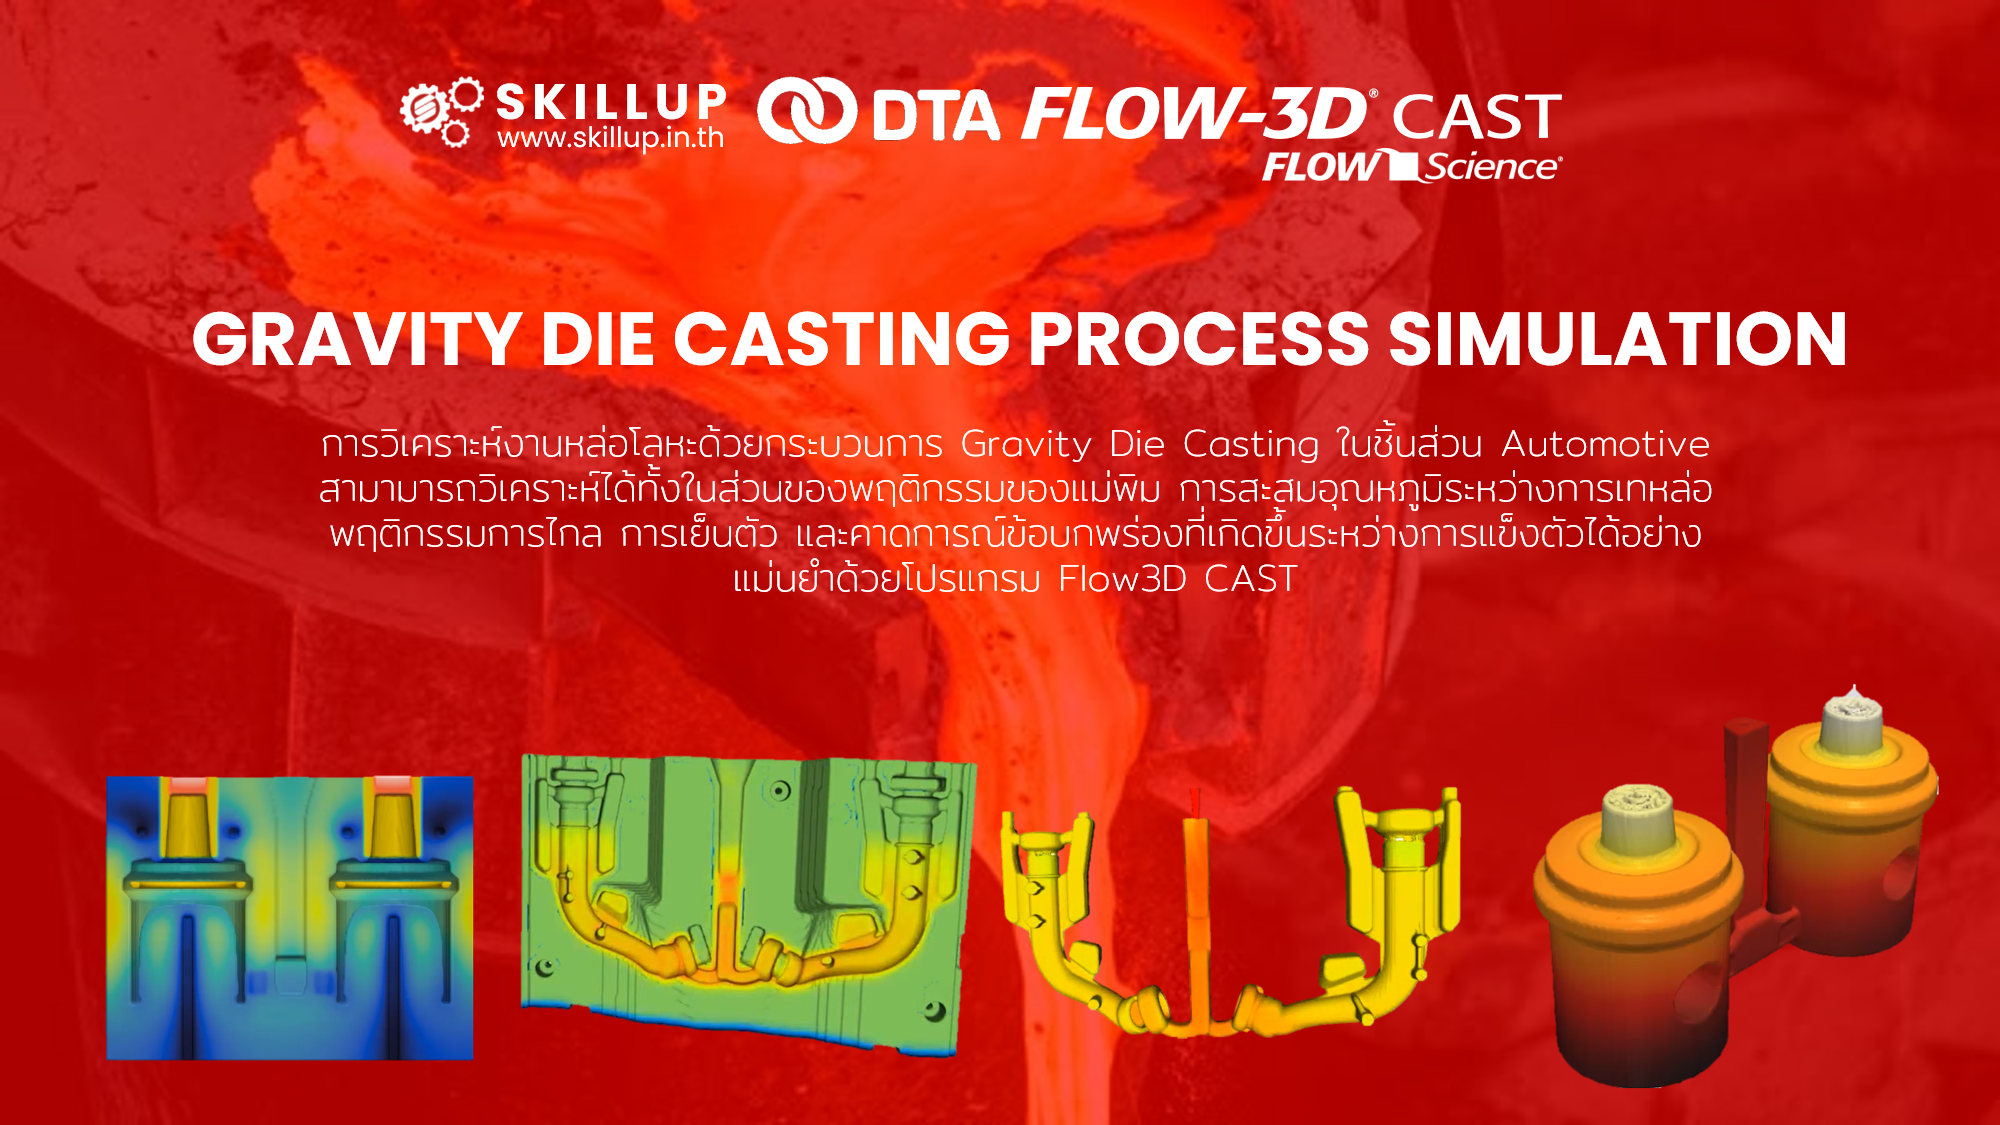 FLOW-3D CAST - Gravity Die Casting Process Simulation